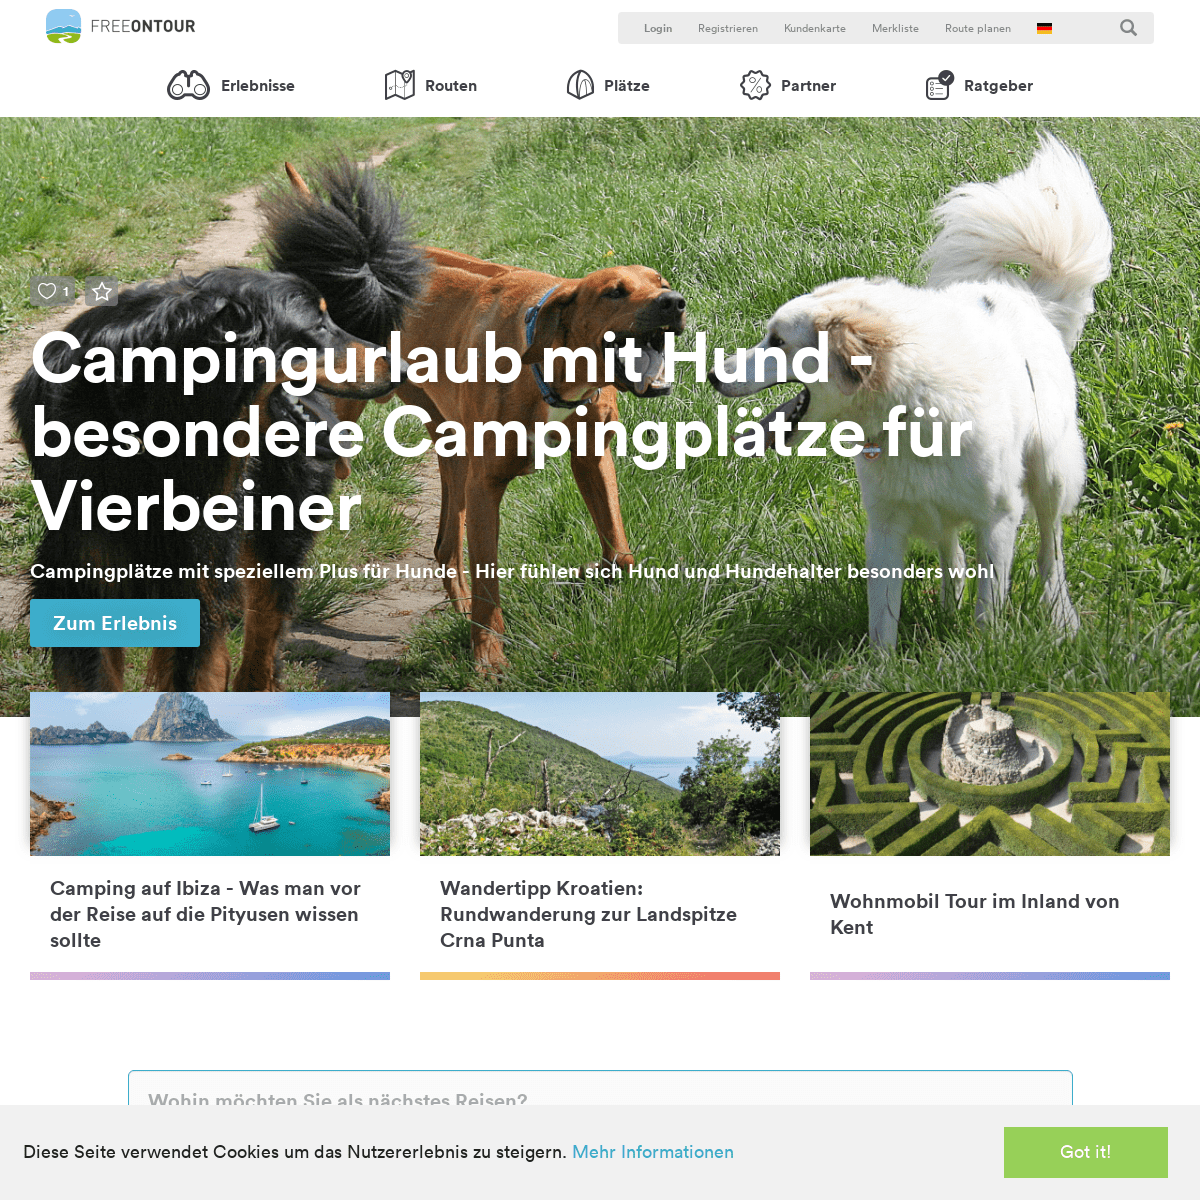 FREEONTOUR - Reiseberichte, Stell- & Campingplatzführer & Routenplanung 